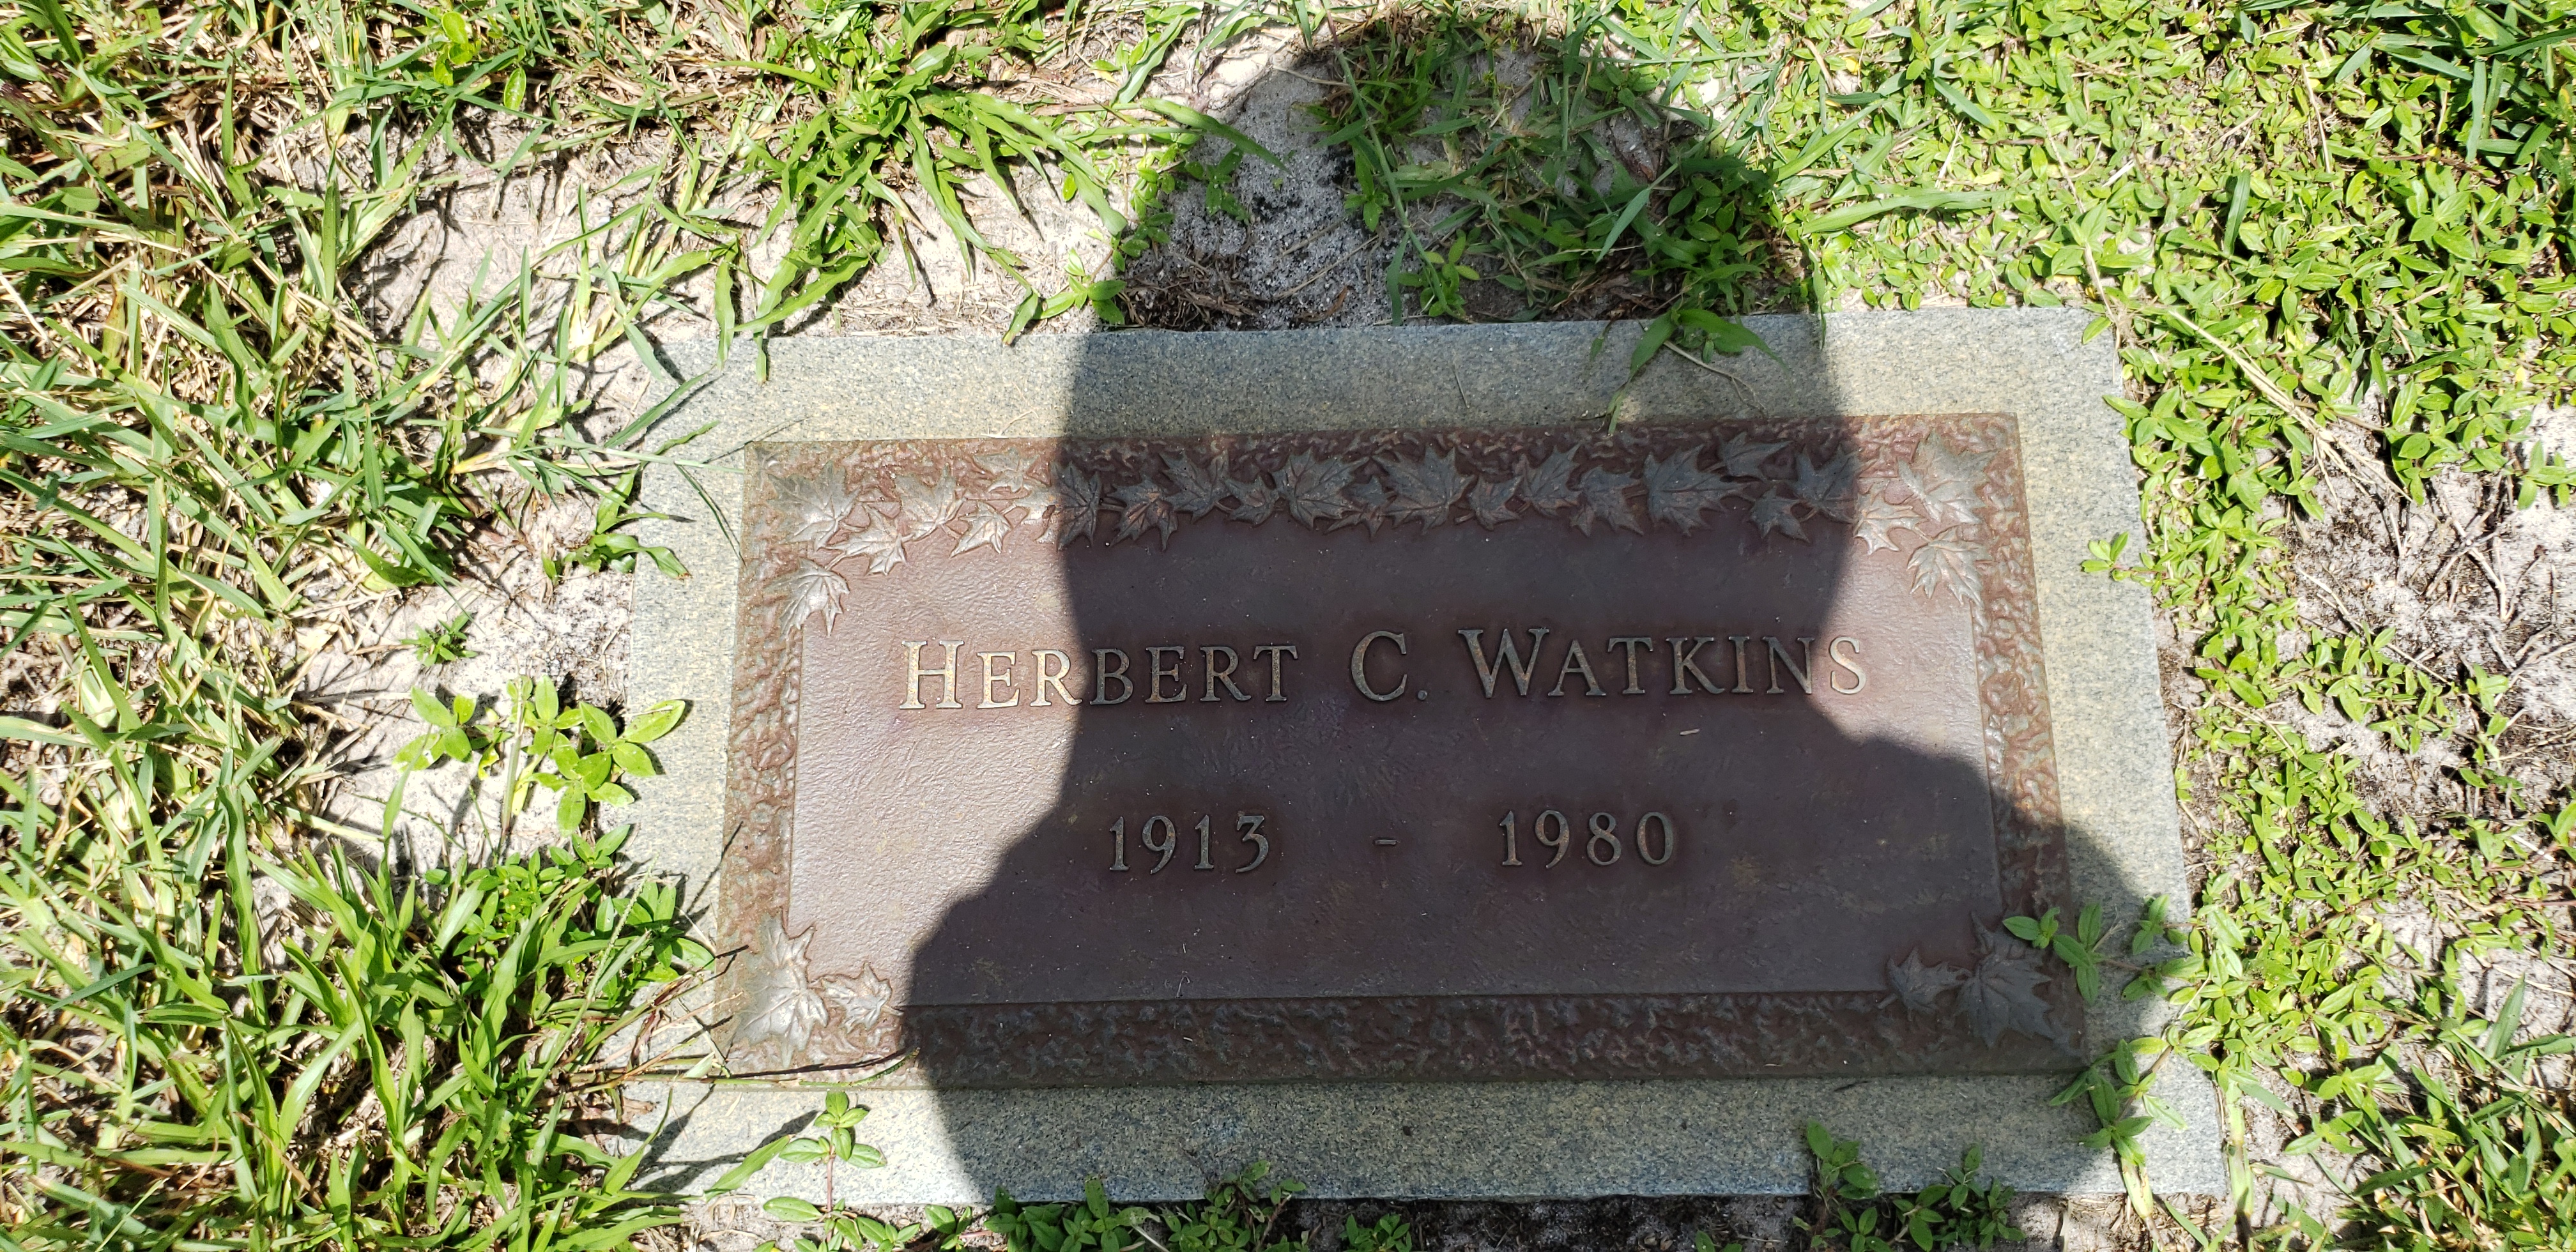 Herbert C Watkins